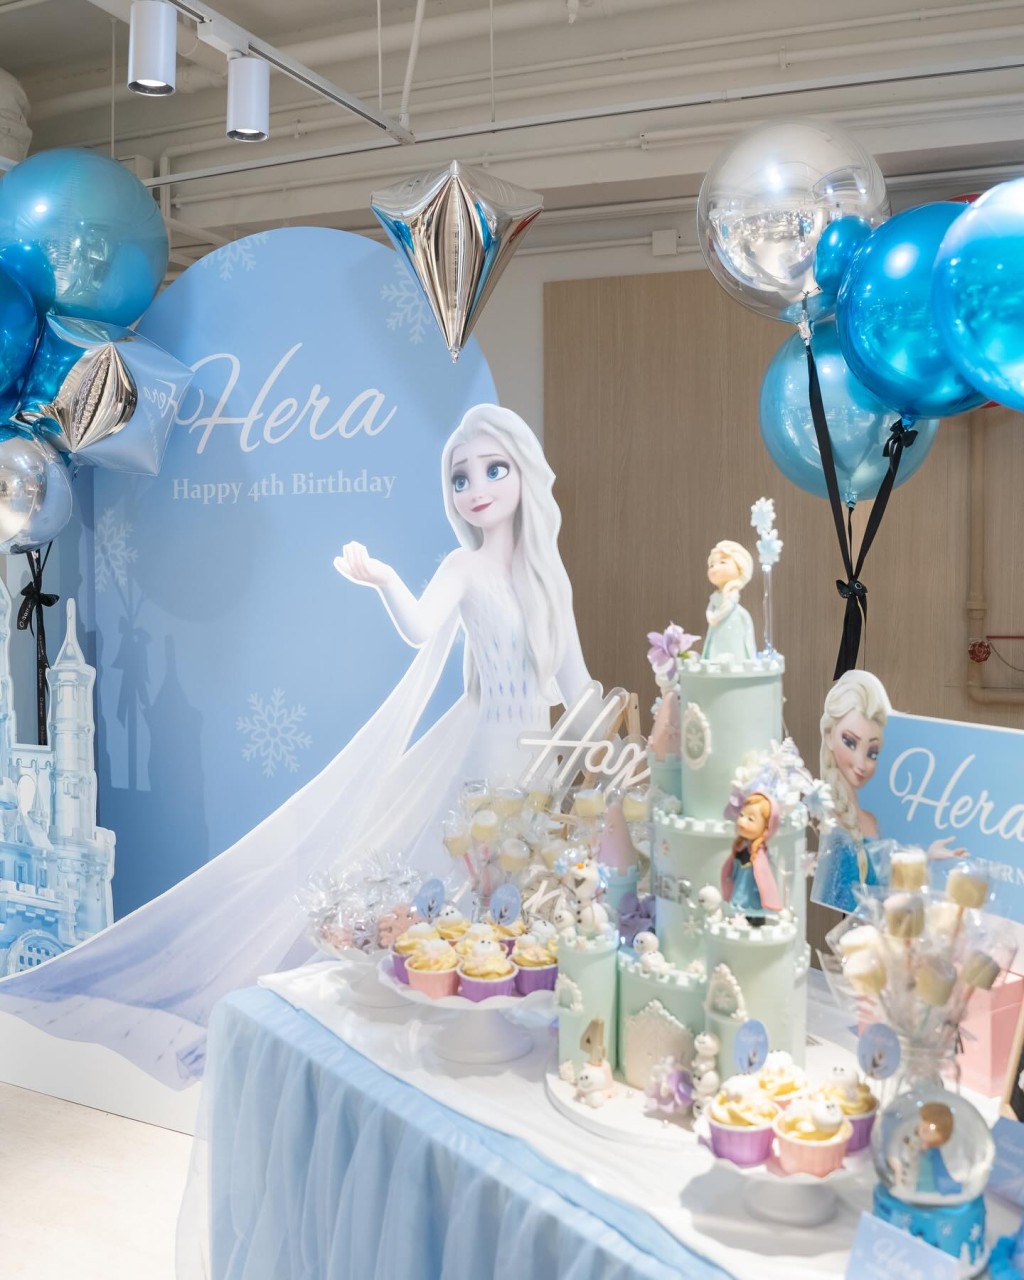 現場配合主題《冰雪奇緣》以粉藍及銀色的氣球佈置，佈景板寫上「Hera Happy 4th Birthday」。